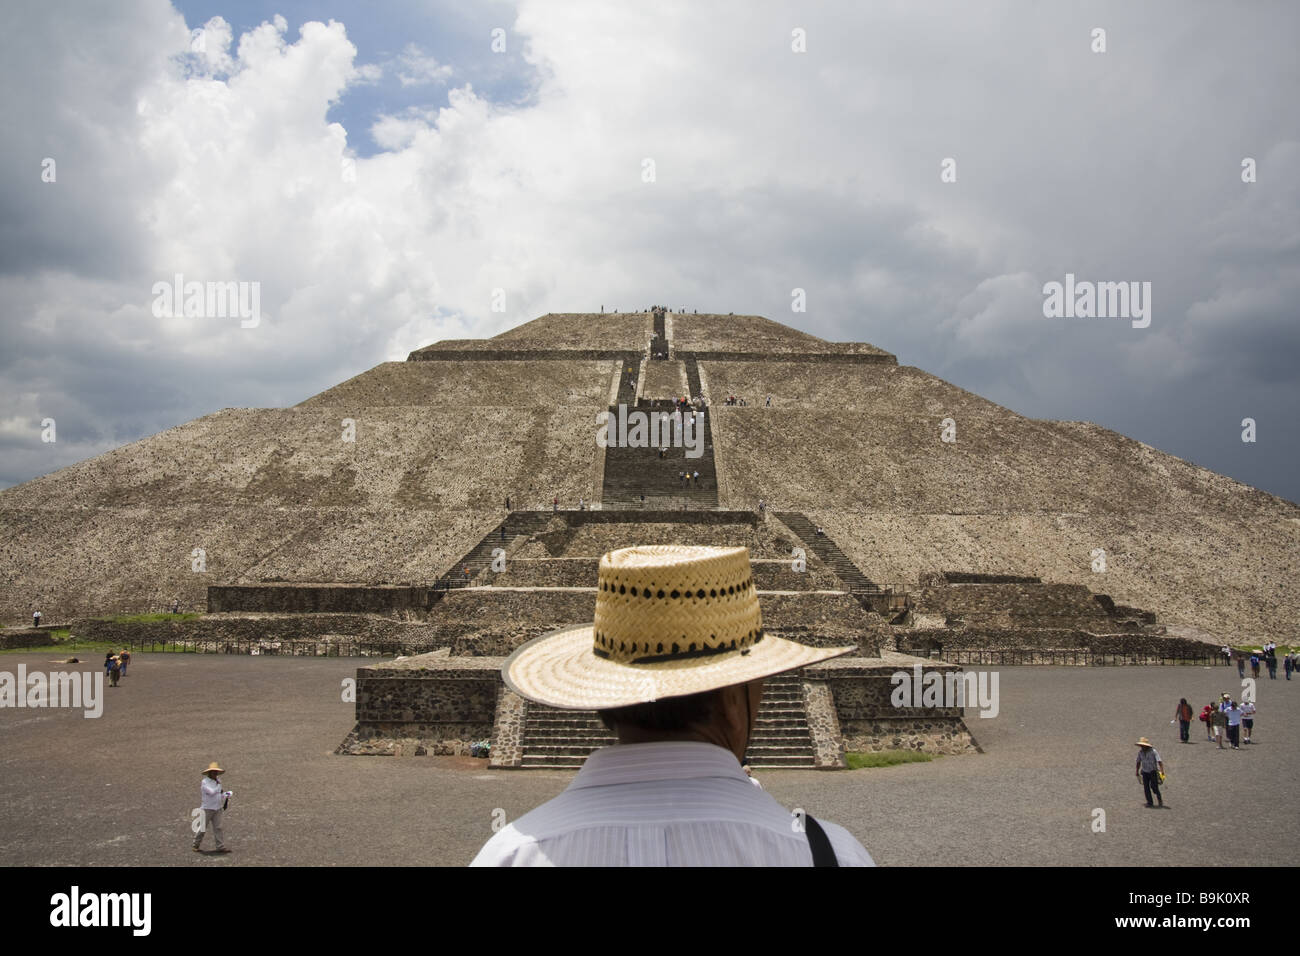 Un hombre que llevaba un sombrero de paja está frente a la Pirámide del Sol en Teotihuacán, estado de México, México. Foto de stock